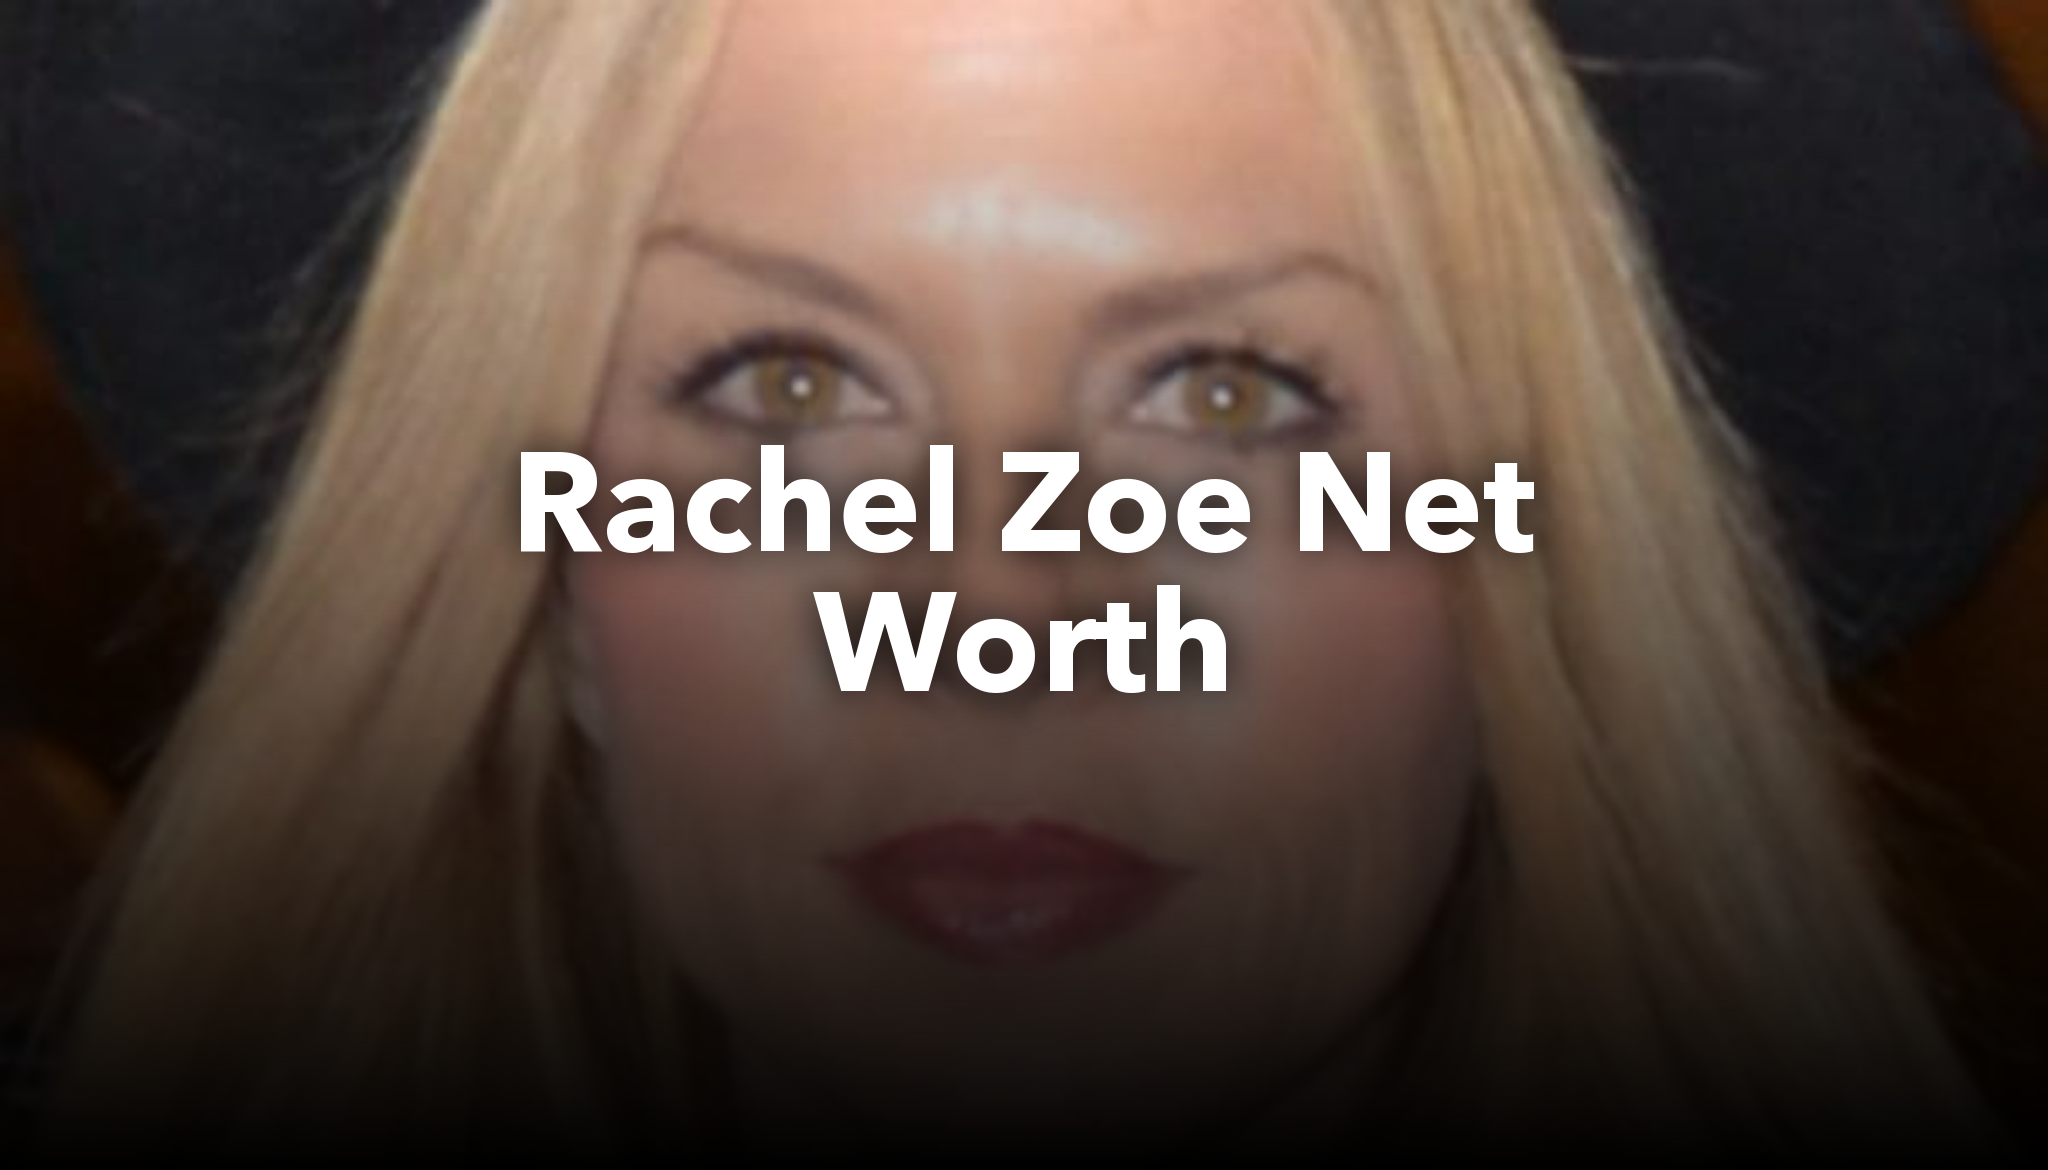 Rachel Zoe Net Worth